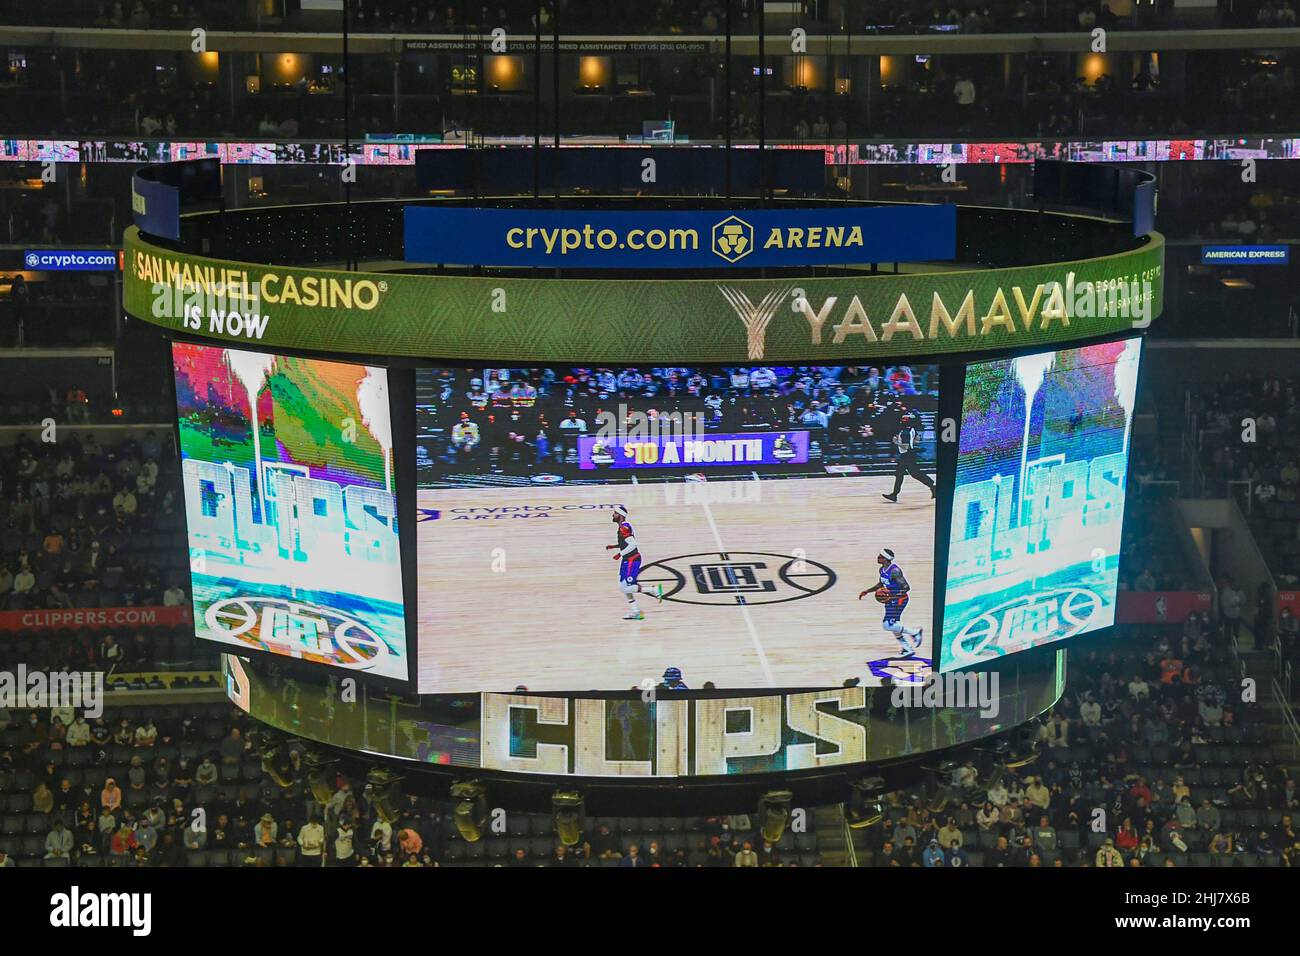 La segnaletica è illuminata presso la Crypto.com Arena, recentemente rinominata, durante una partita di pallacanestro NBA tra LA Clippers e Brooklyn Nets, lunedì, dicembre Foto Stock